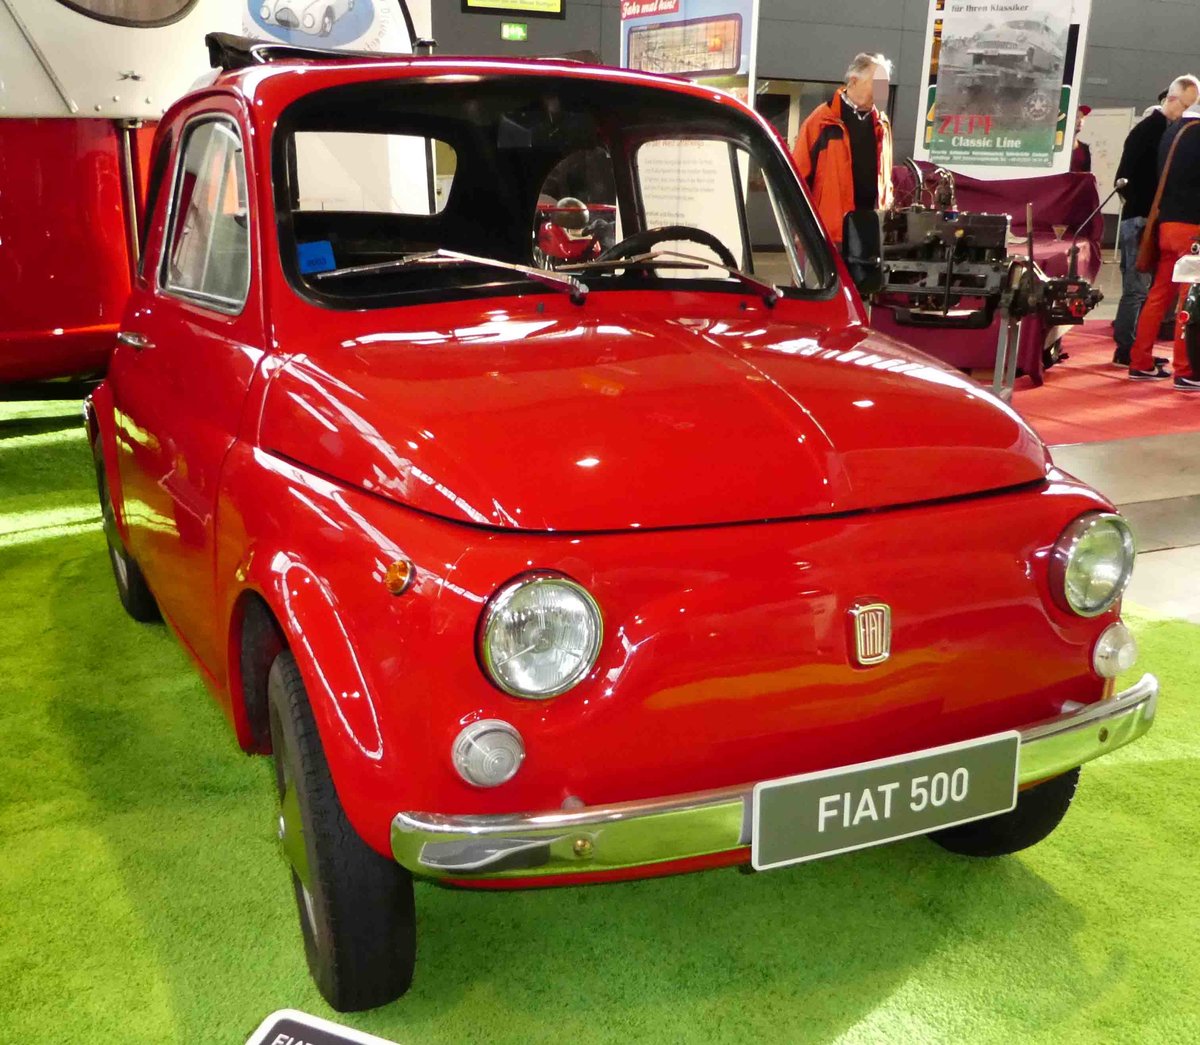 =Fiat 500, gesehen bei der Retro Classic in Stuttgart - März 2017